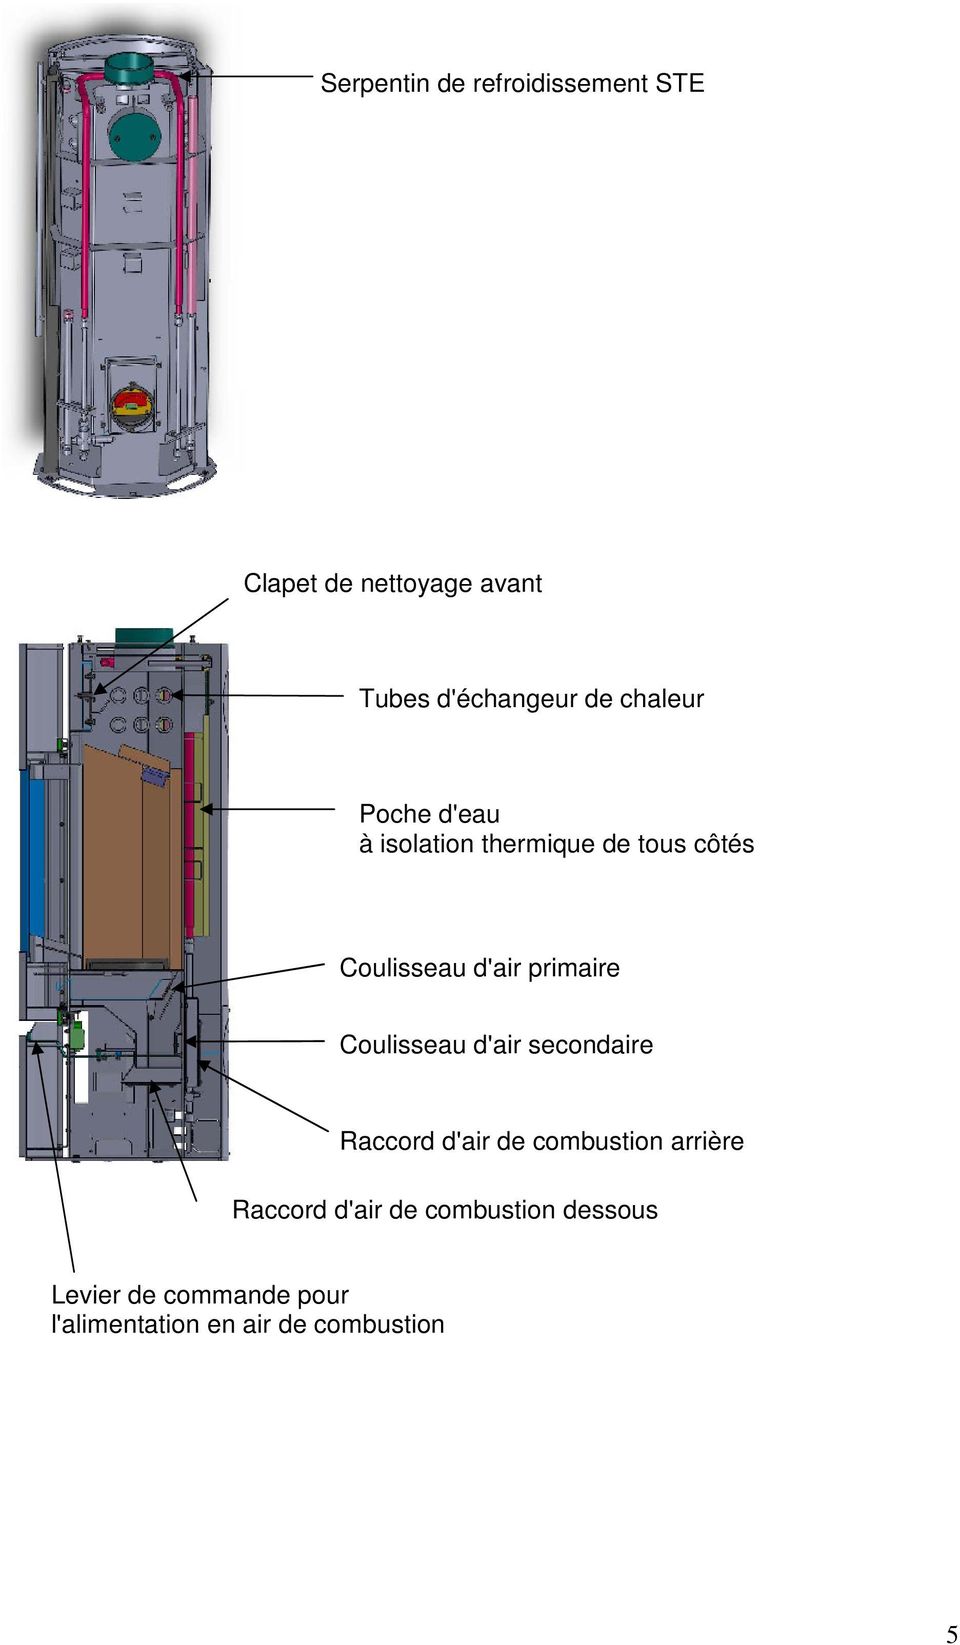 primaire Coulisseau d'air secondaire Raccord d'air de combustion arrière Raccord